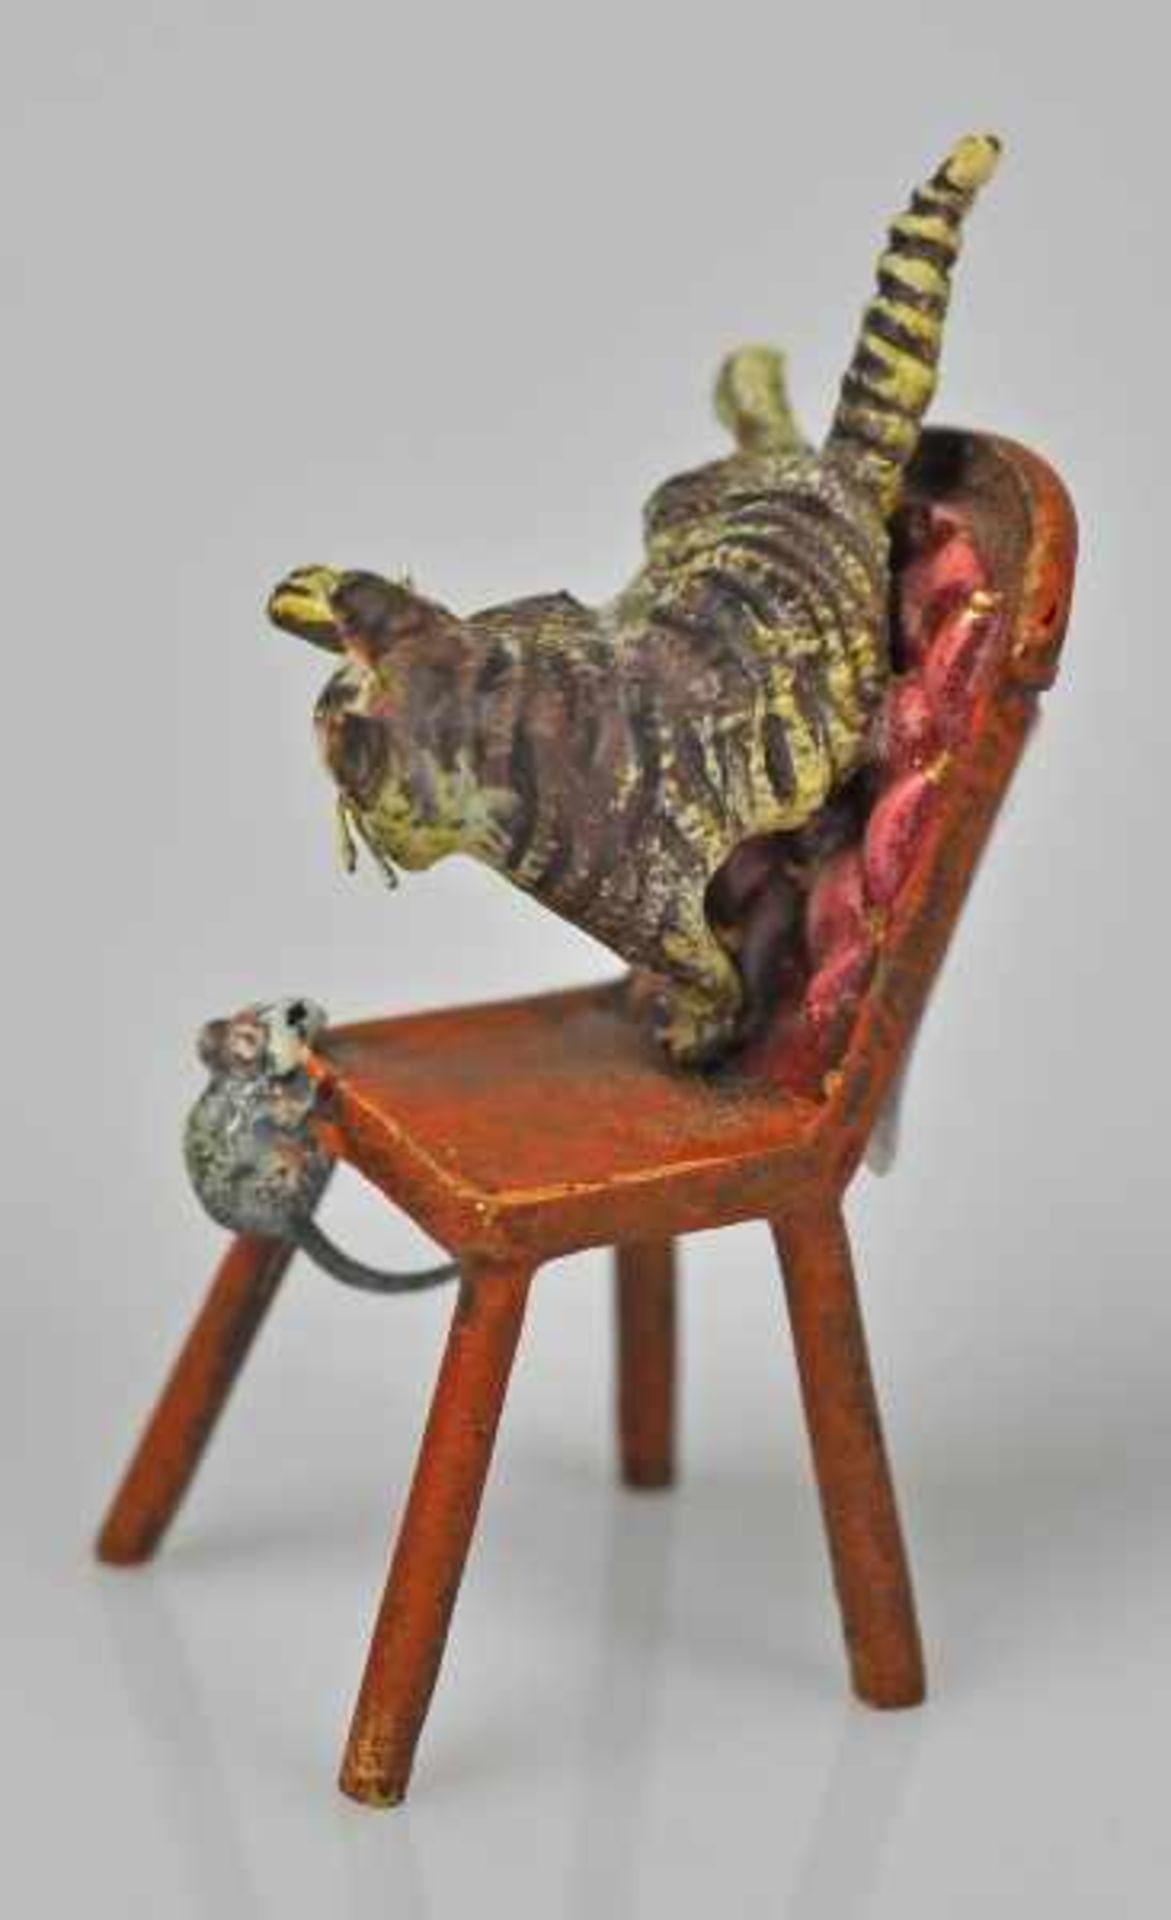 KATZE eine Maus jagend, auf Stuhl, Wiener Bronze, gemarkt u. bez. Bermann Wien, H 5cm - Image 2 of 3